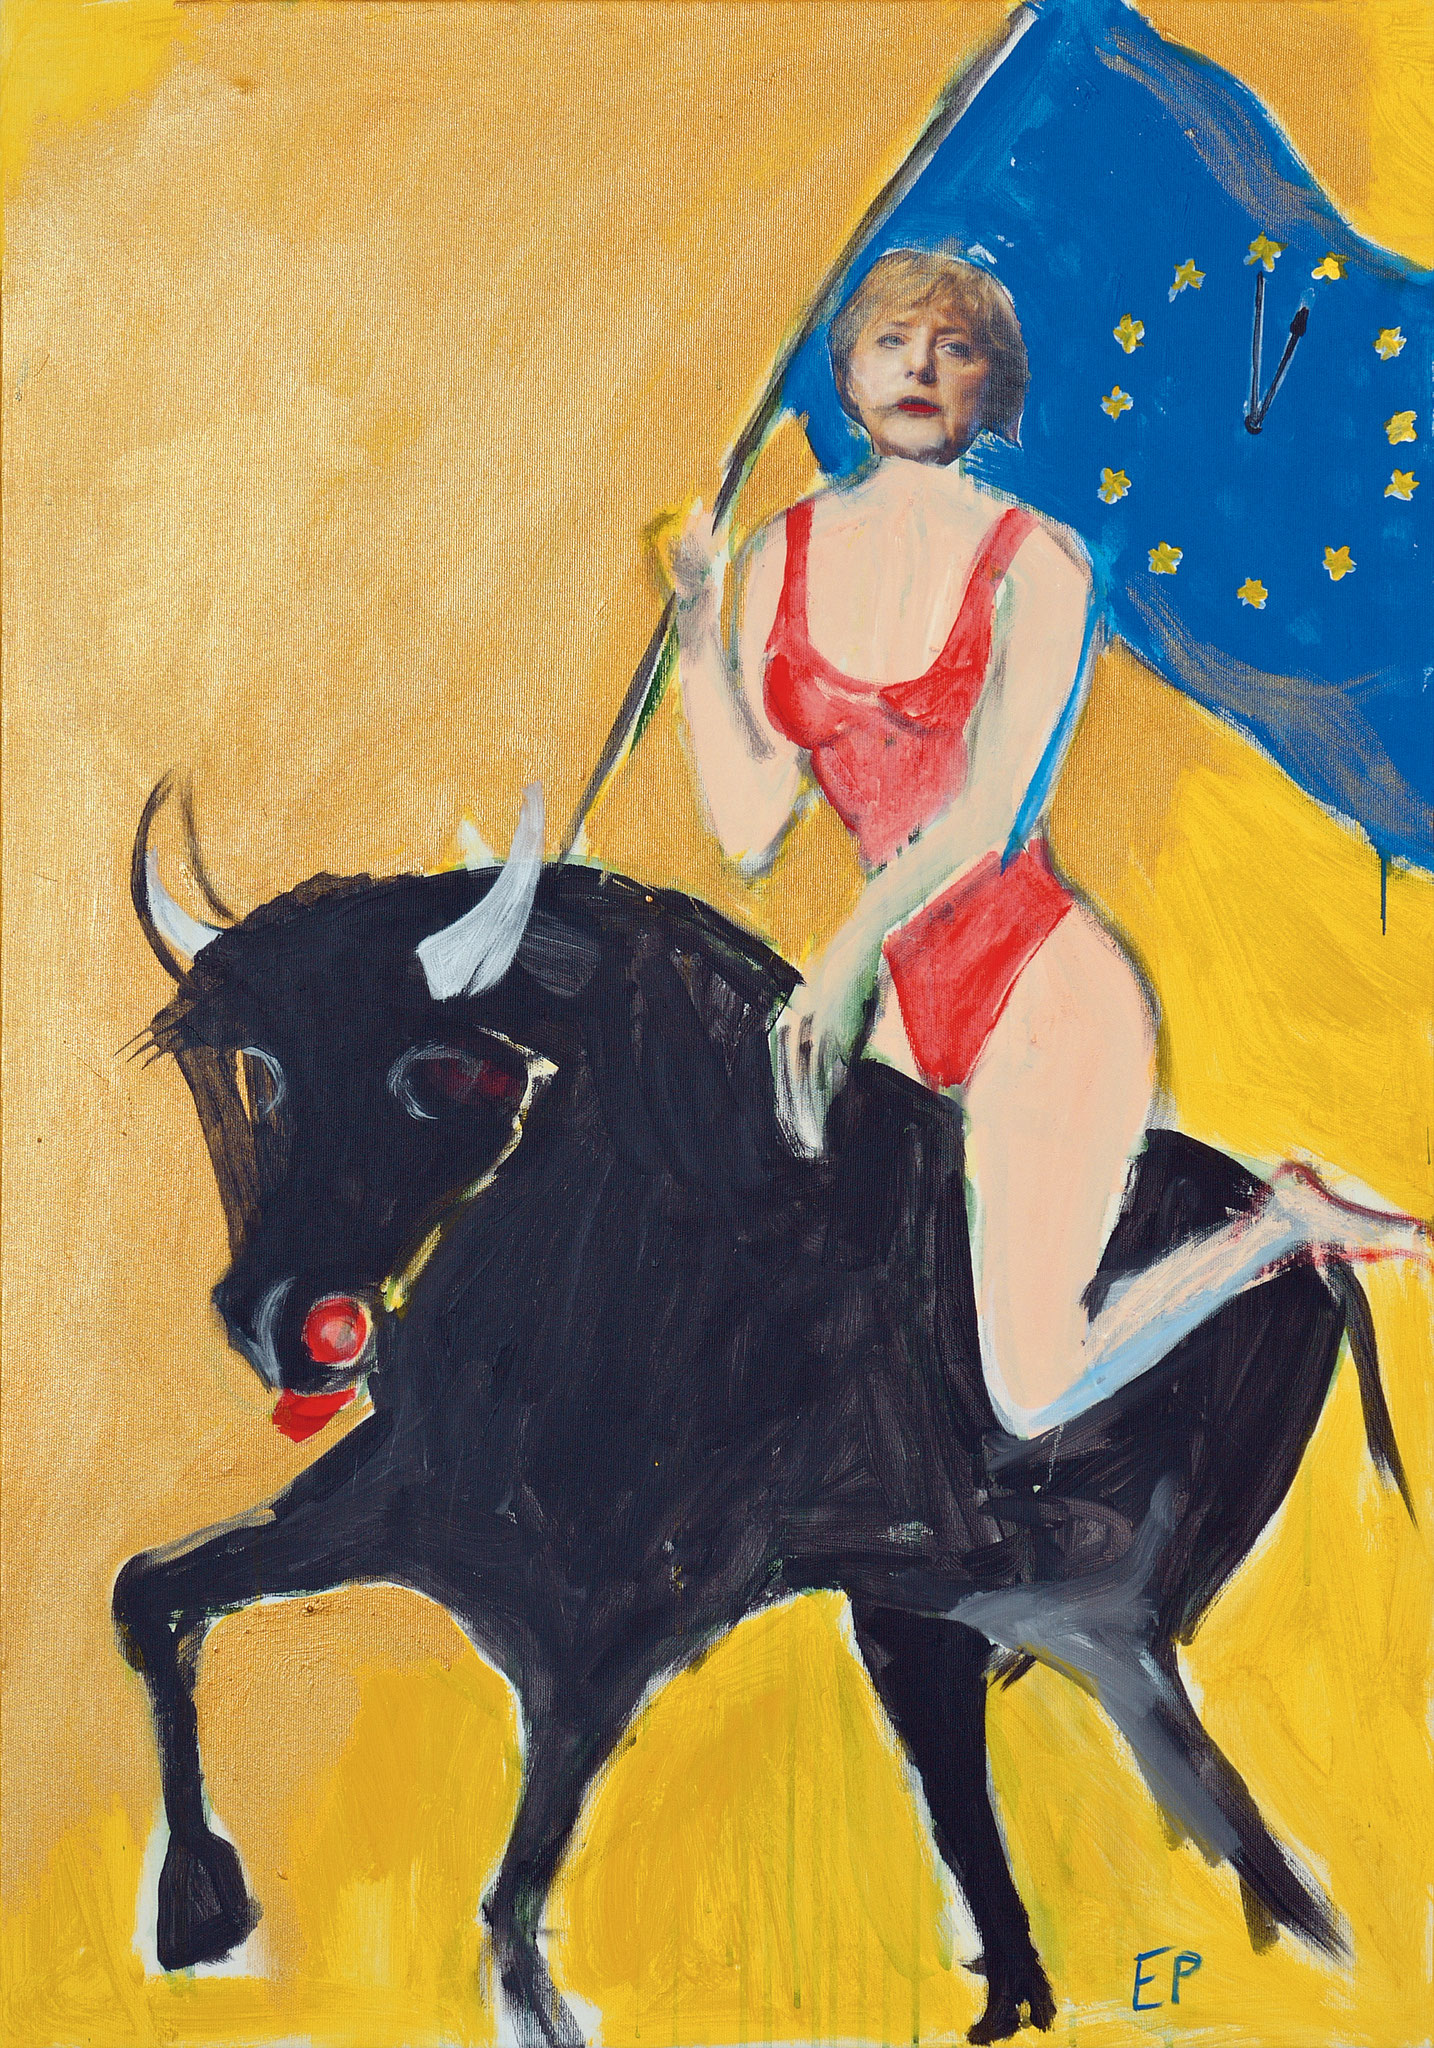 Serie Wilde Reiterinnen, Europa, Malerei Collageelemente, 100 x 70 cm, 2009